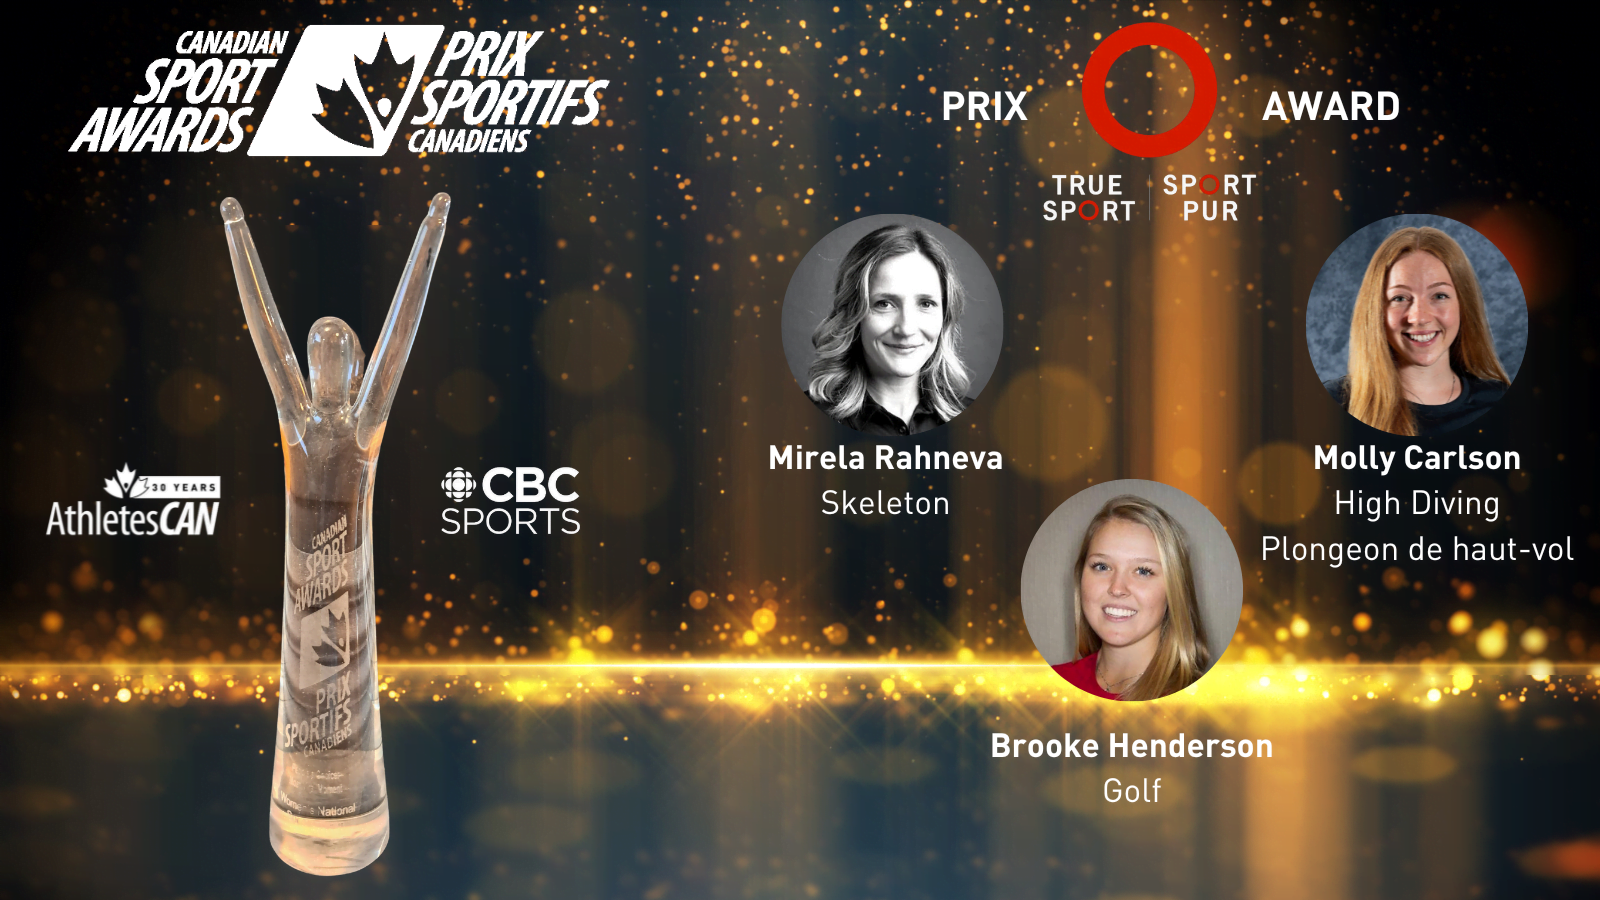 45th Canadian Sport Awards: True Sport Award Nominees